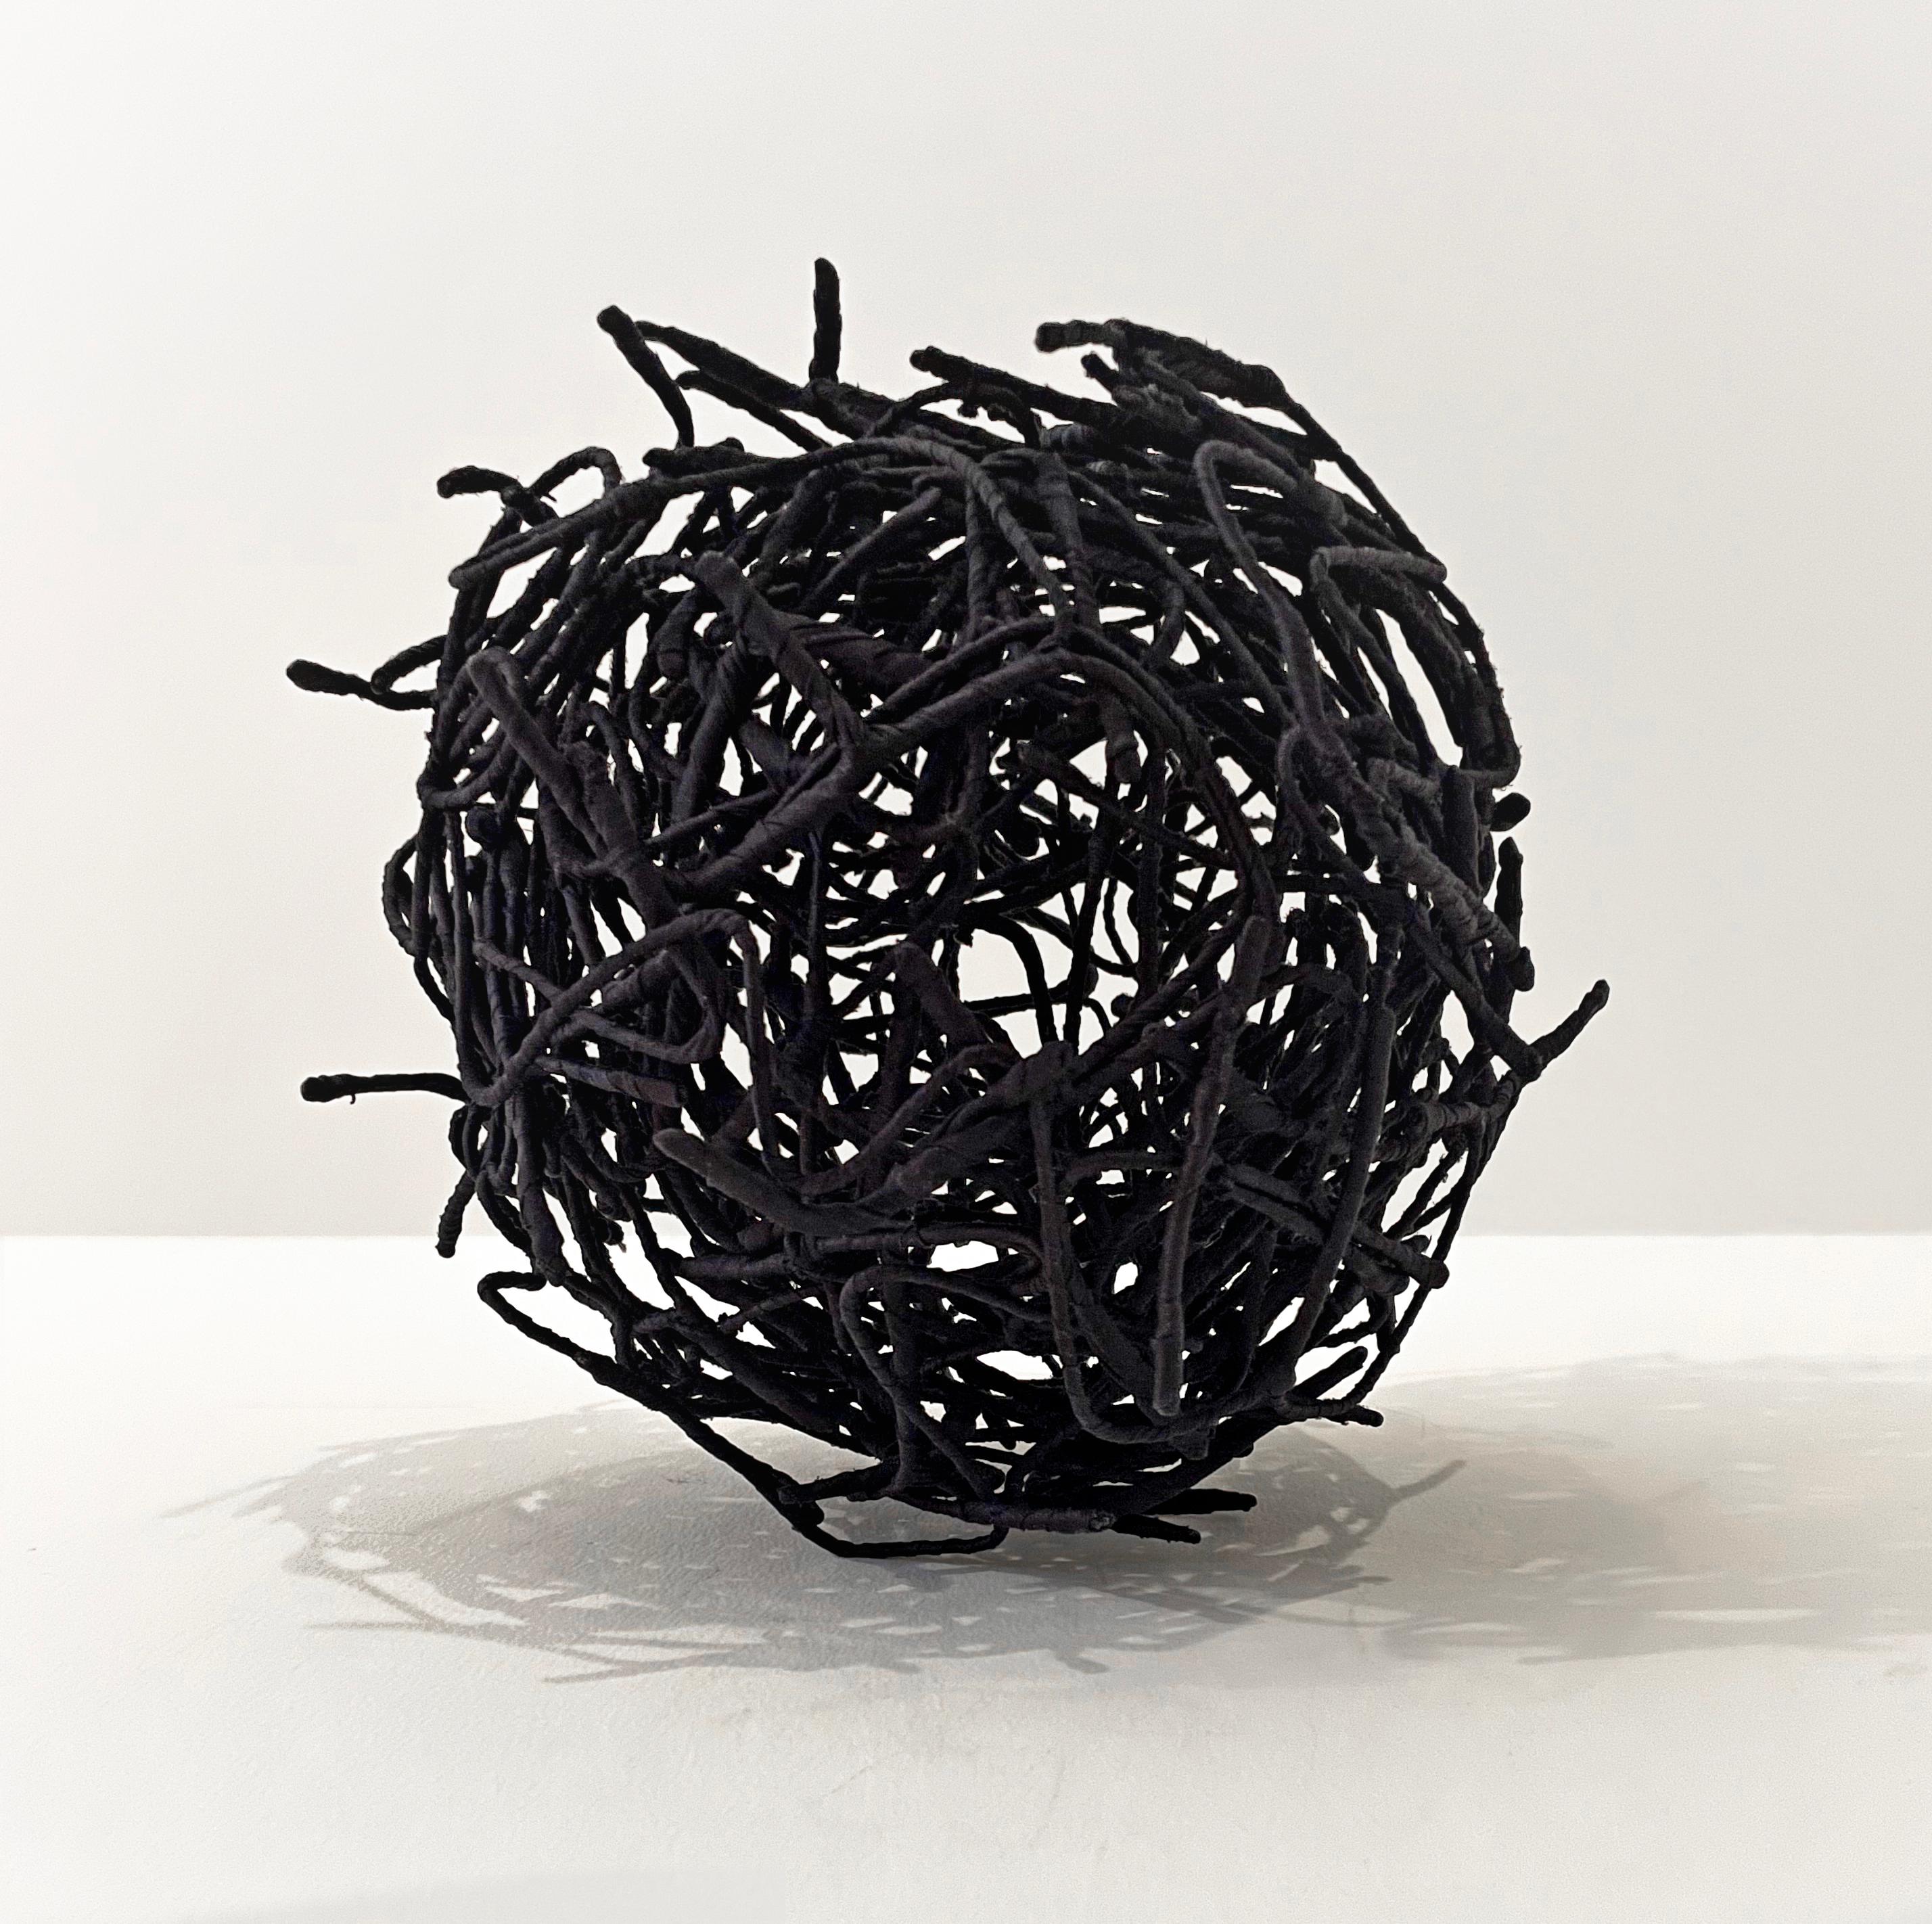  Federica Patera and Andrea Sbra Pereg Abstract Sculpture - Fiber Sculpture: 'IMAGINATION'